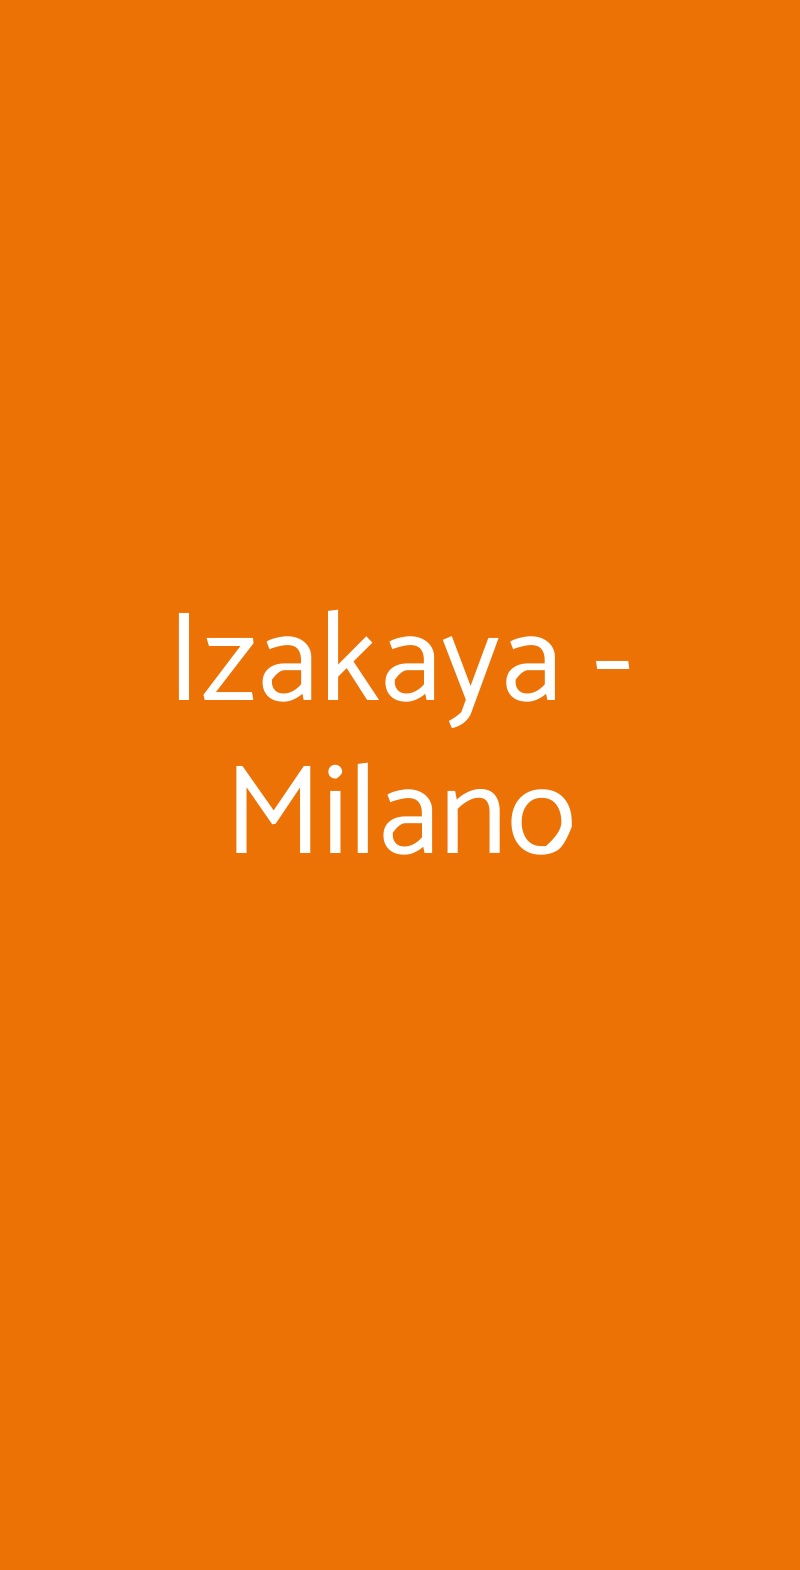 Izakaya - Milano Milano menù 1 pagina